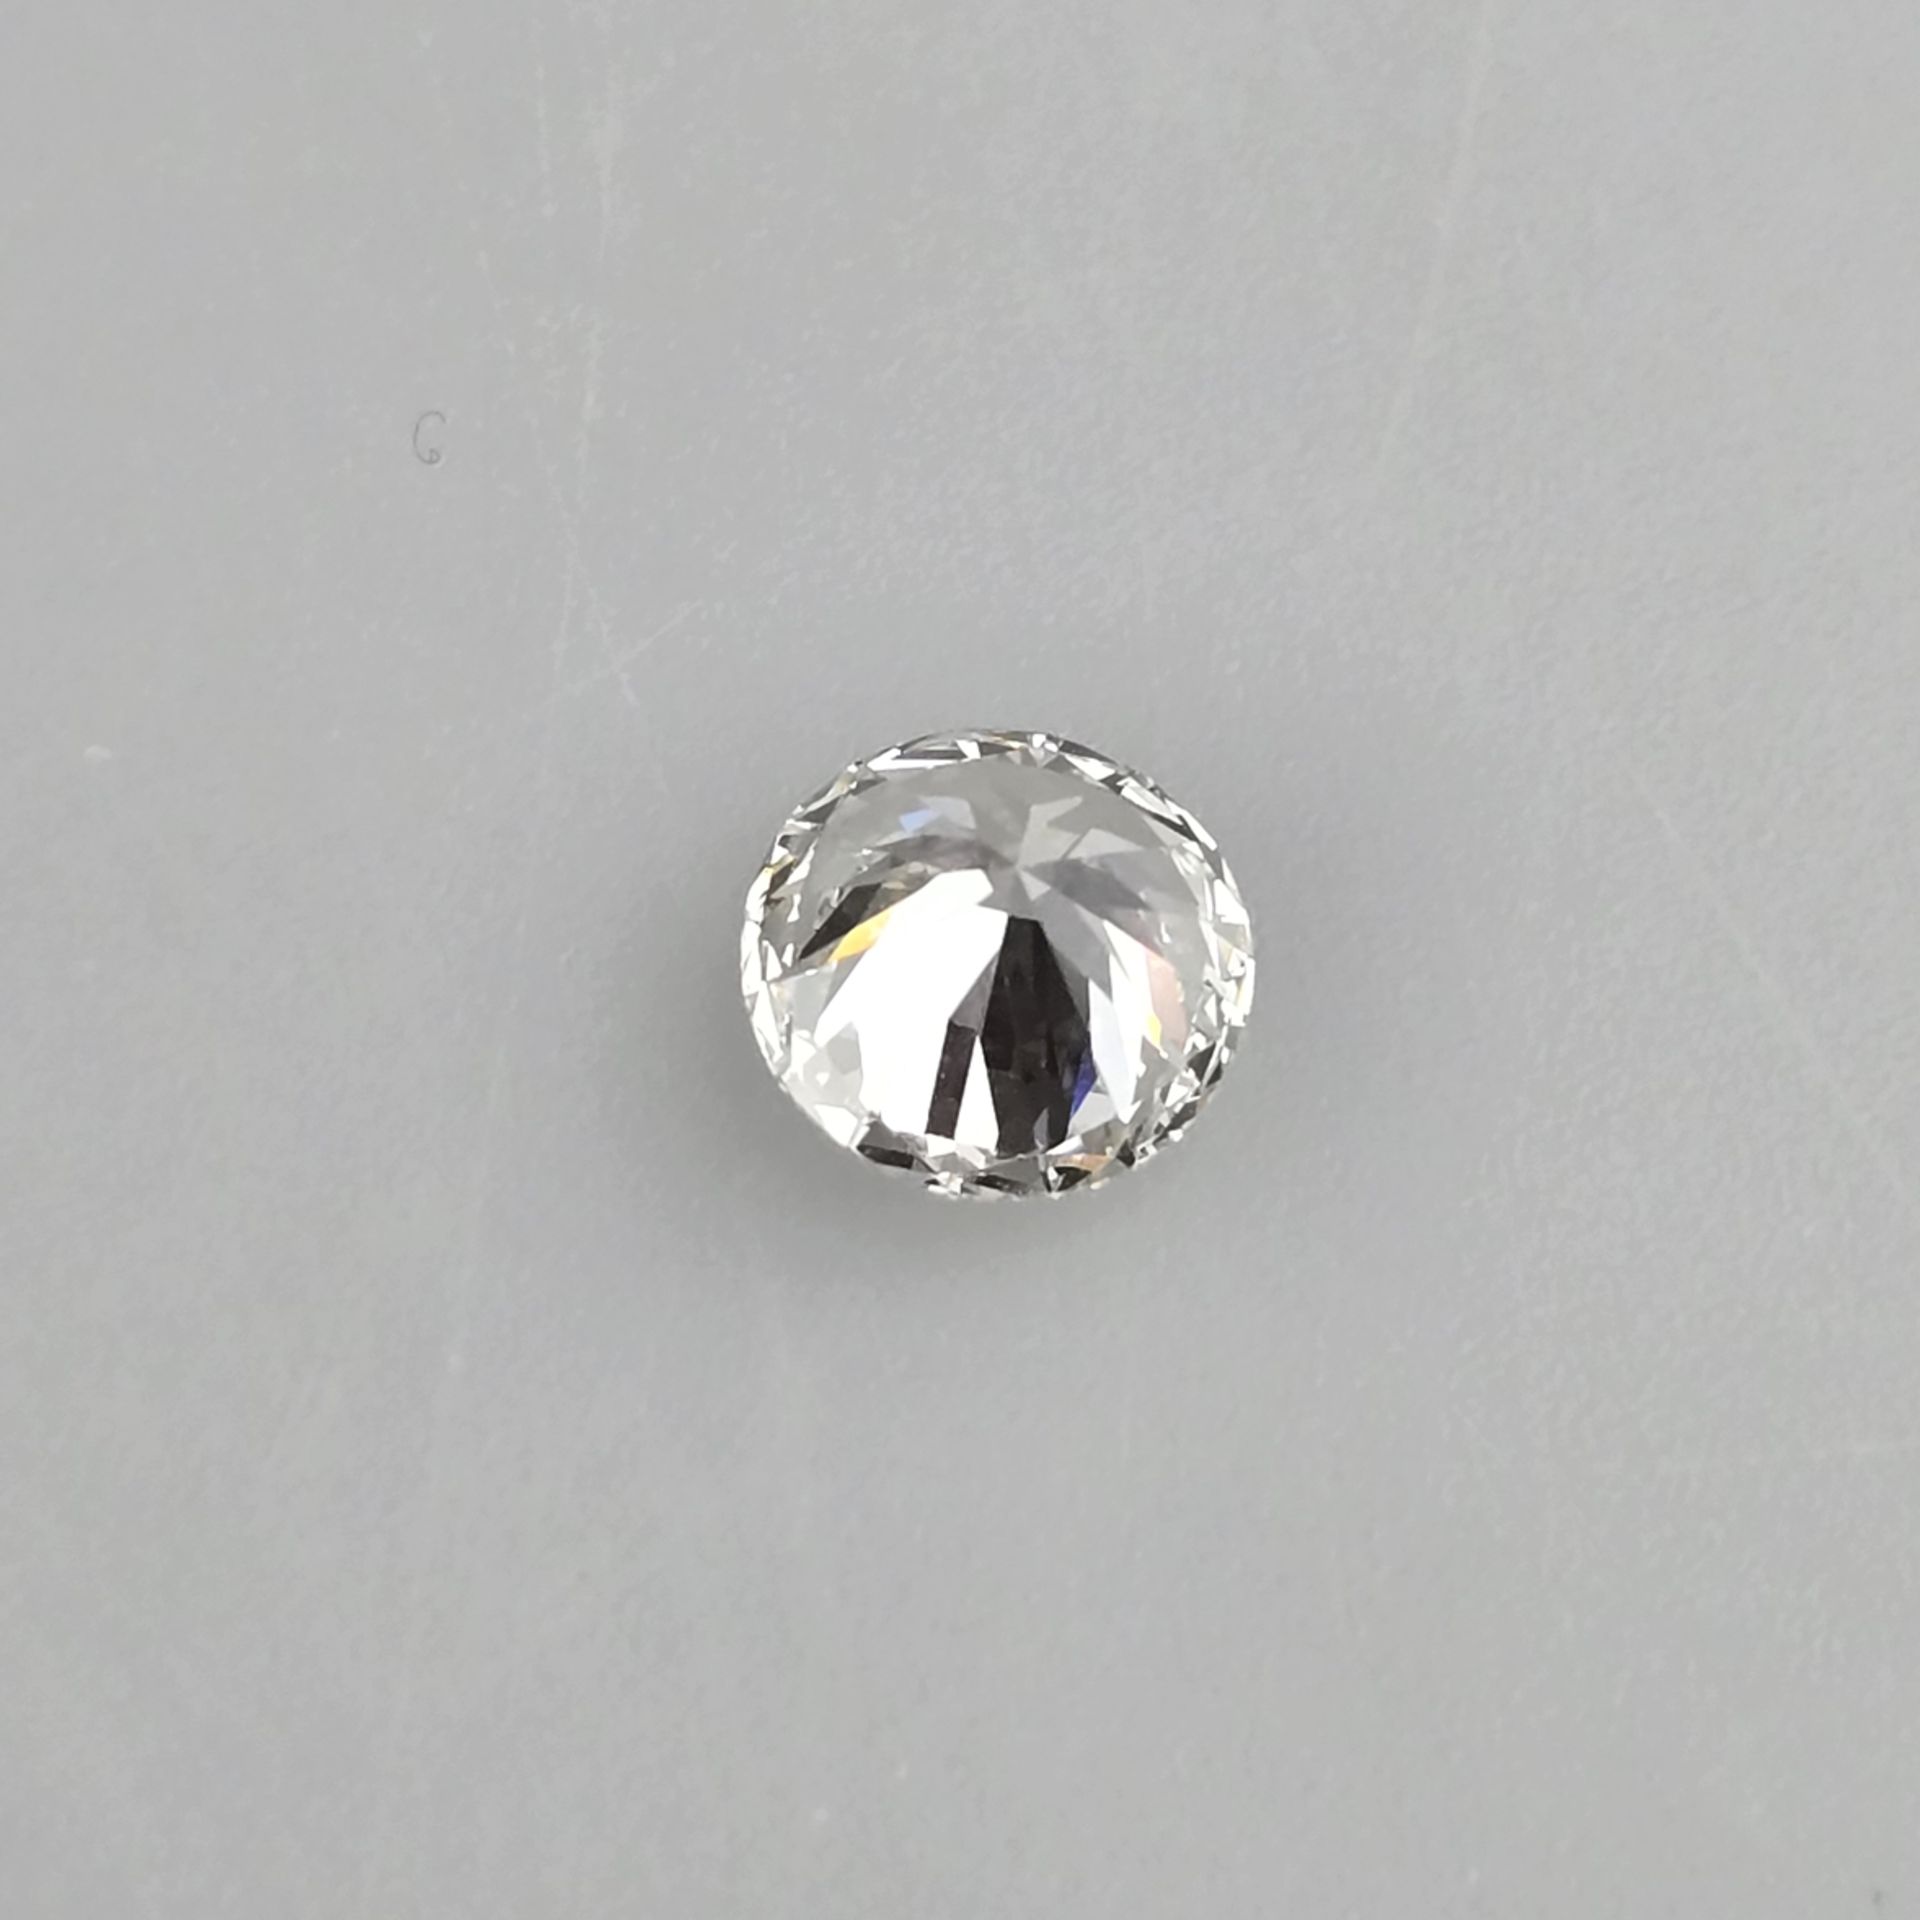 Loser Diamant von 3,03 ct. mit Lasersignatur - Labor-Brillant von idealer Qualität, Gewicht 3,03 ct - Bild 5 aus 8